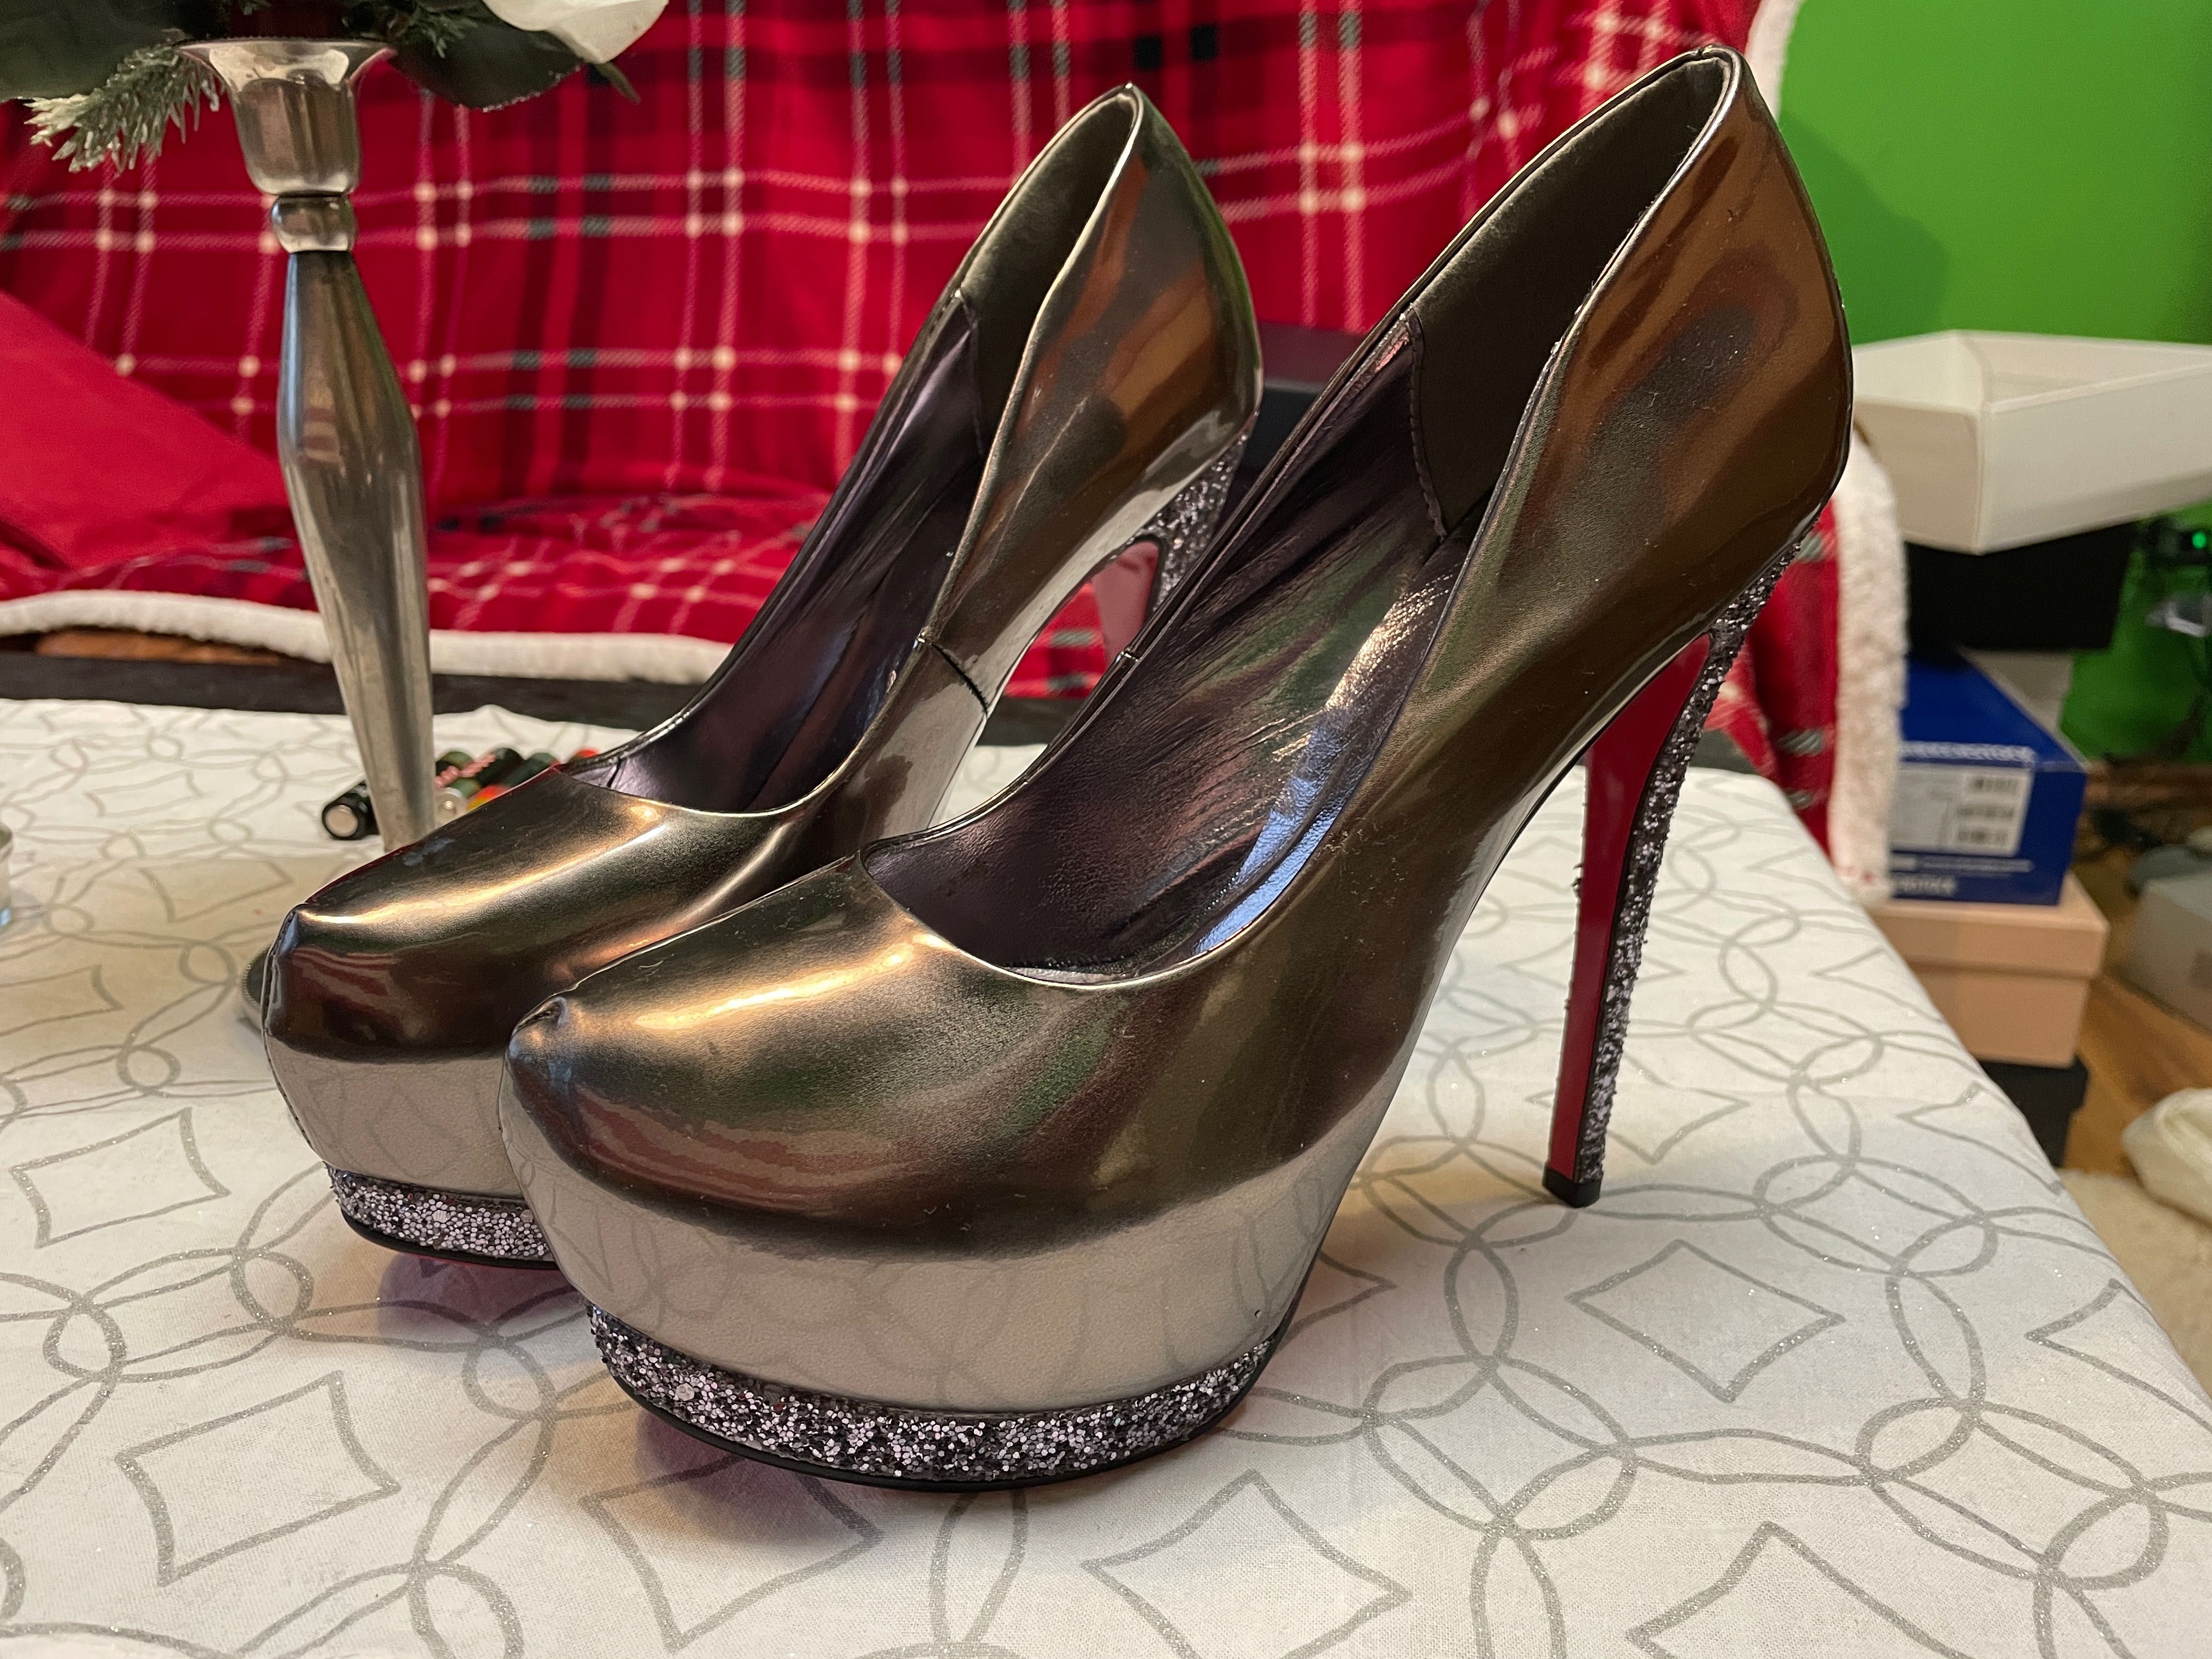 Pantofi dama marimea 40 pentru revelion sau ocazii speciale